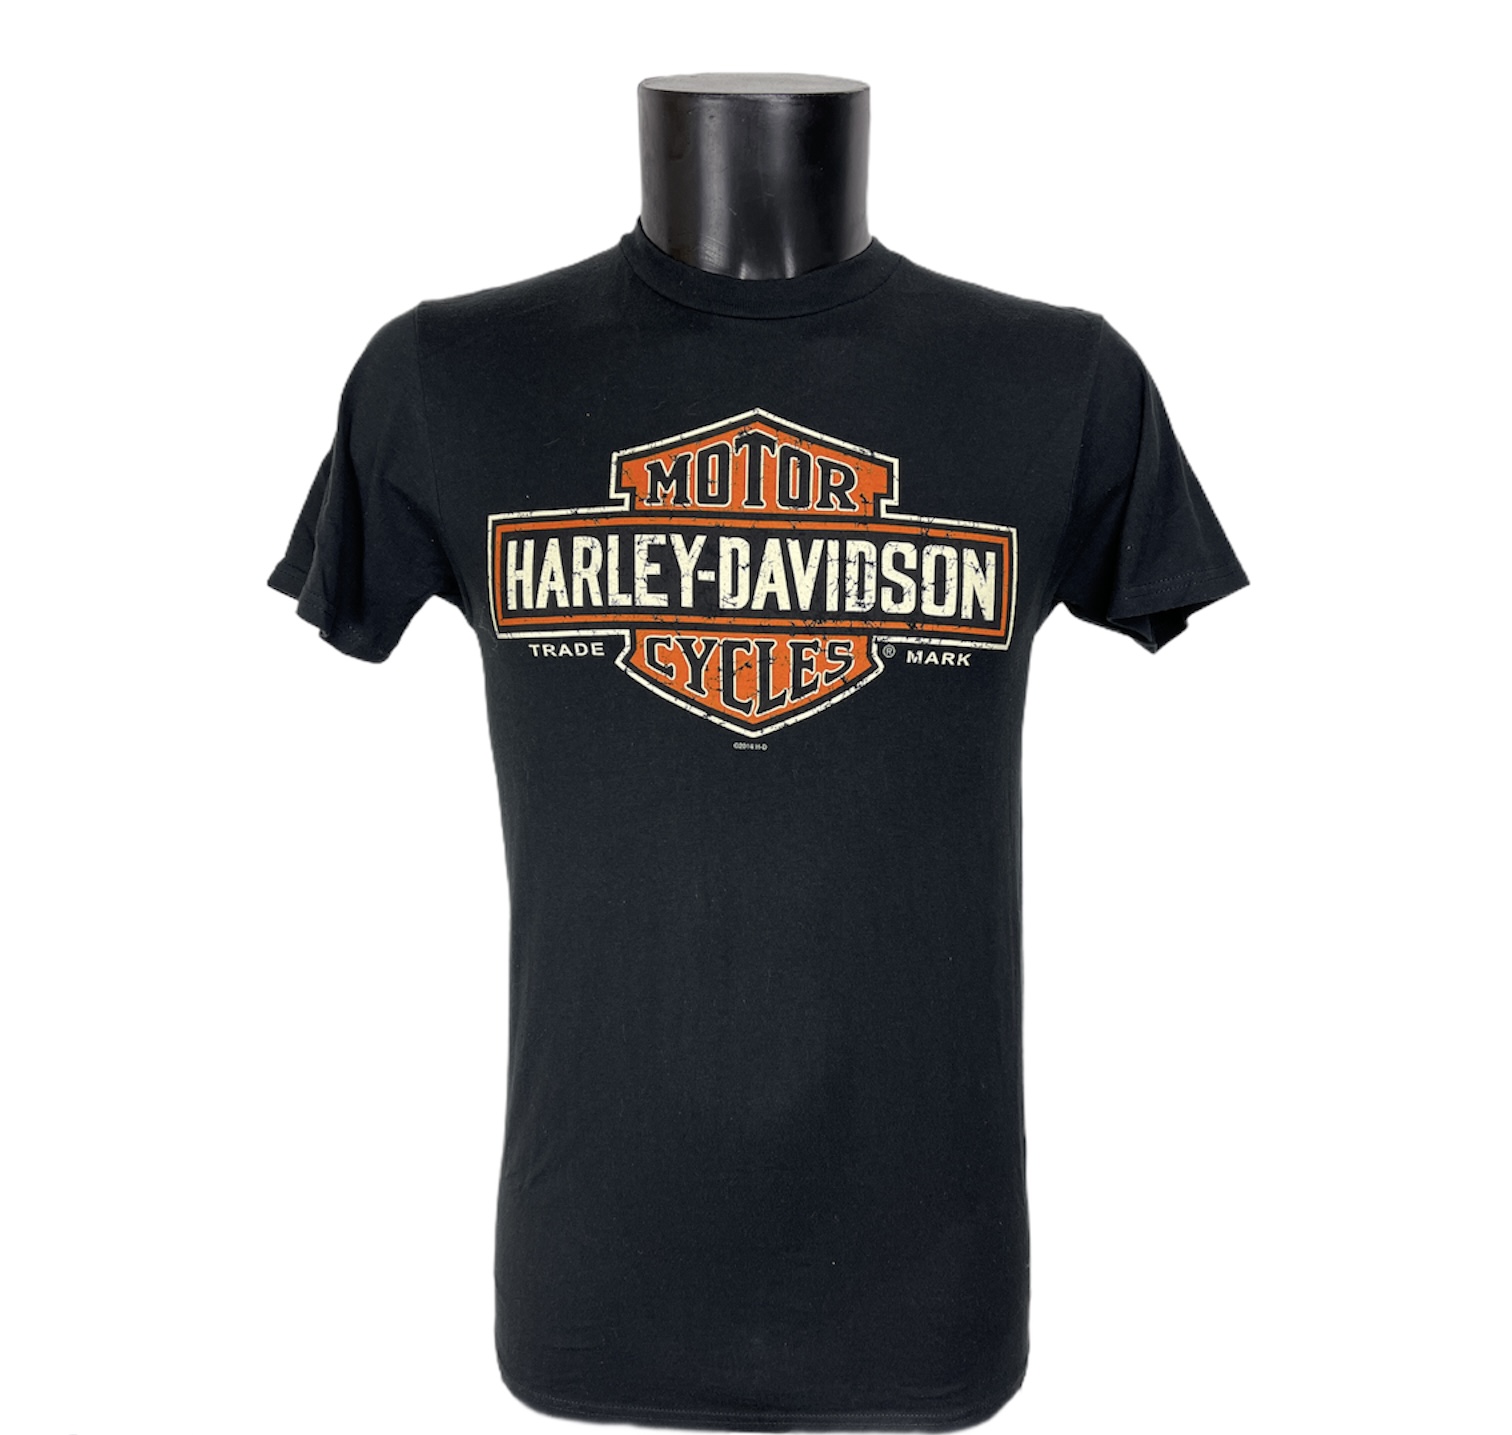 Maglietta a maniche corte Harley Davidson nera con logo bianco nero e arancione